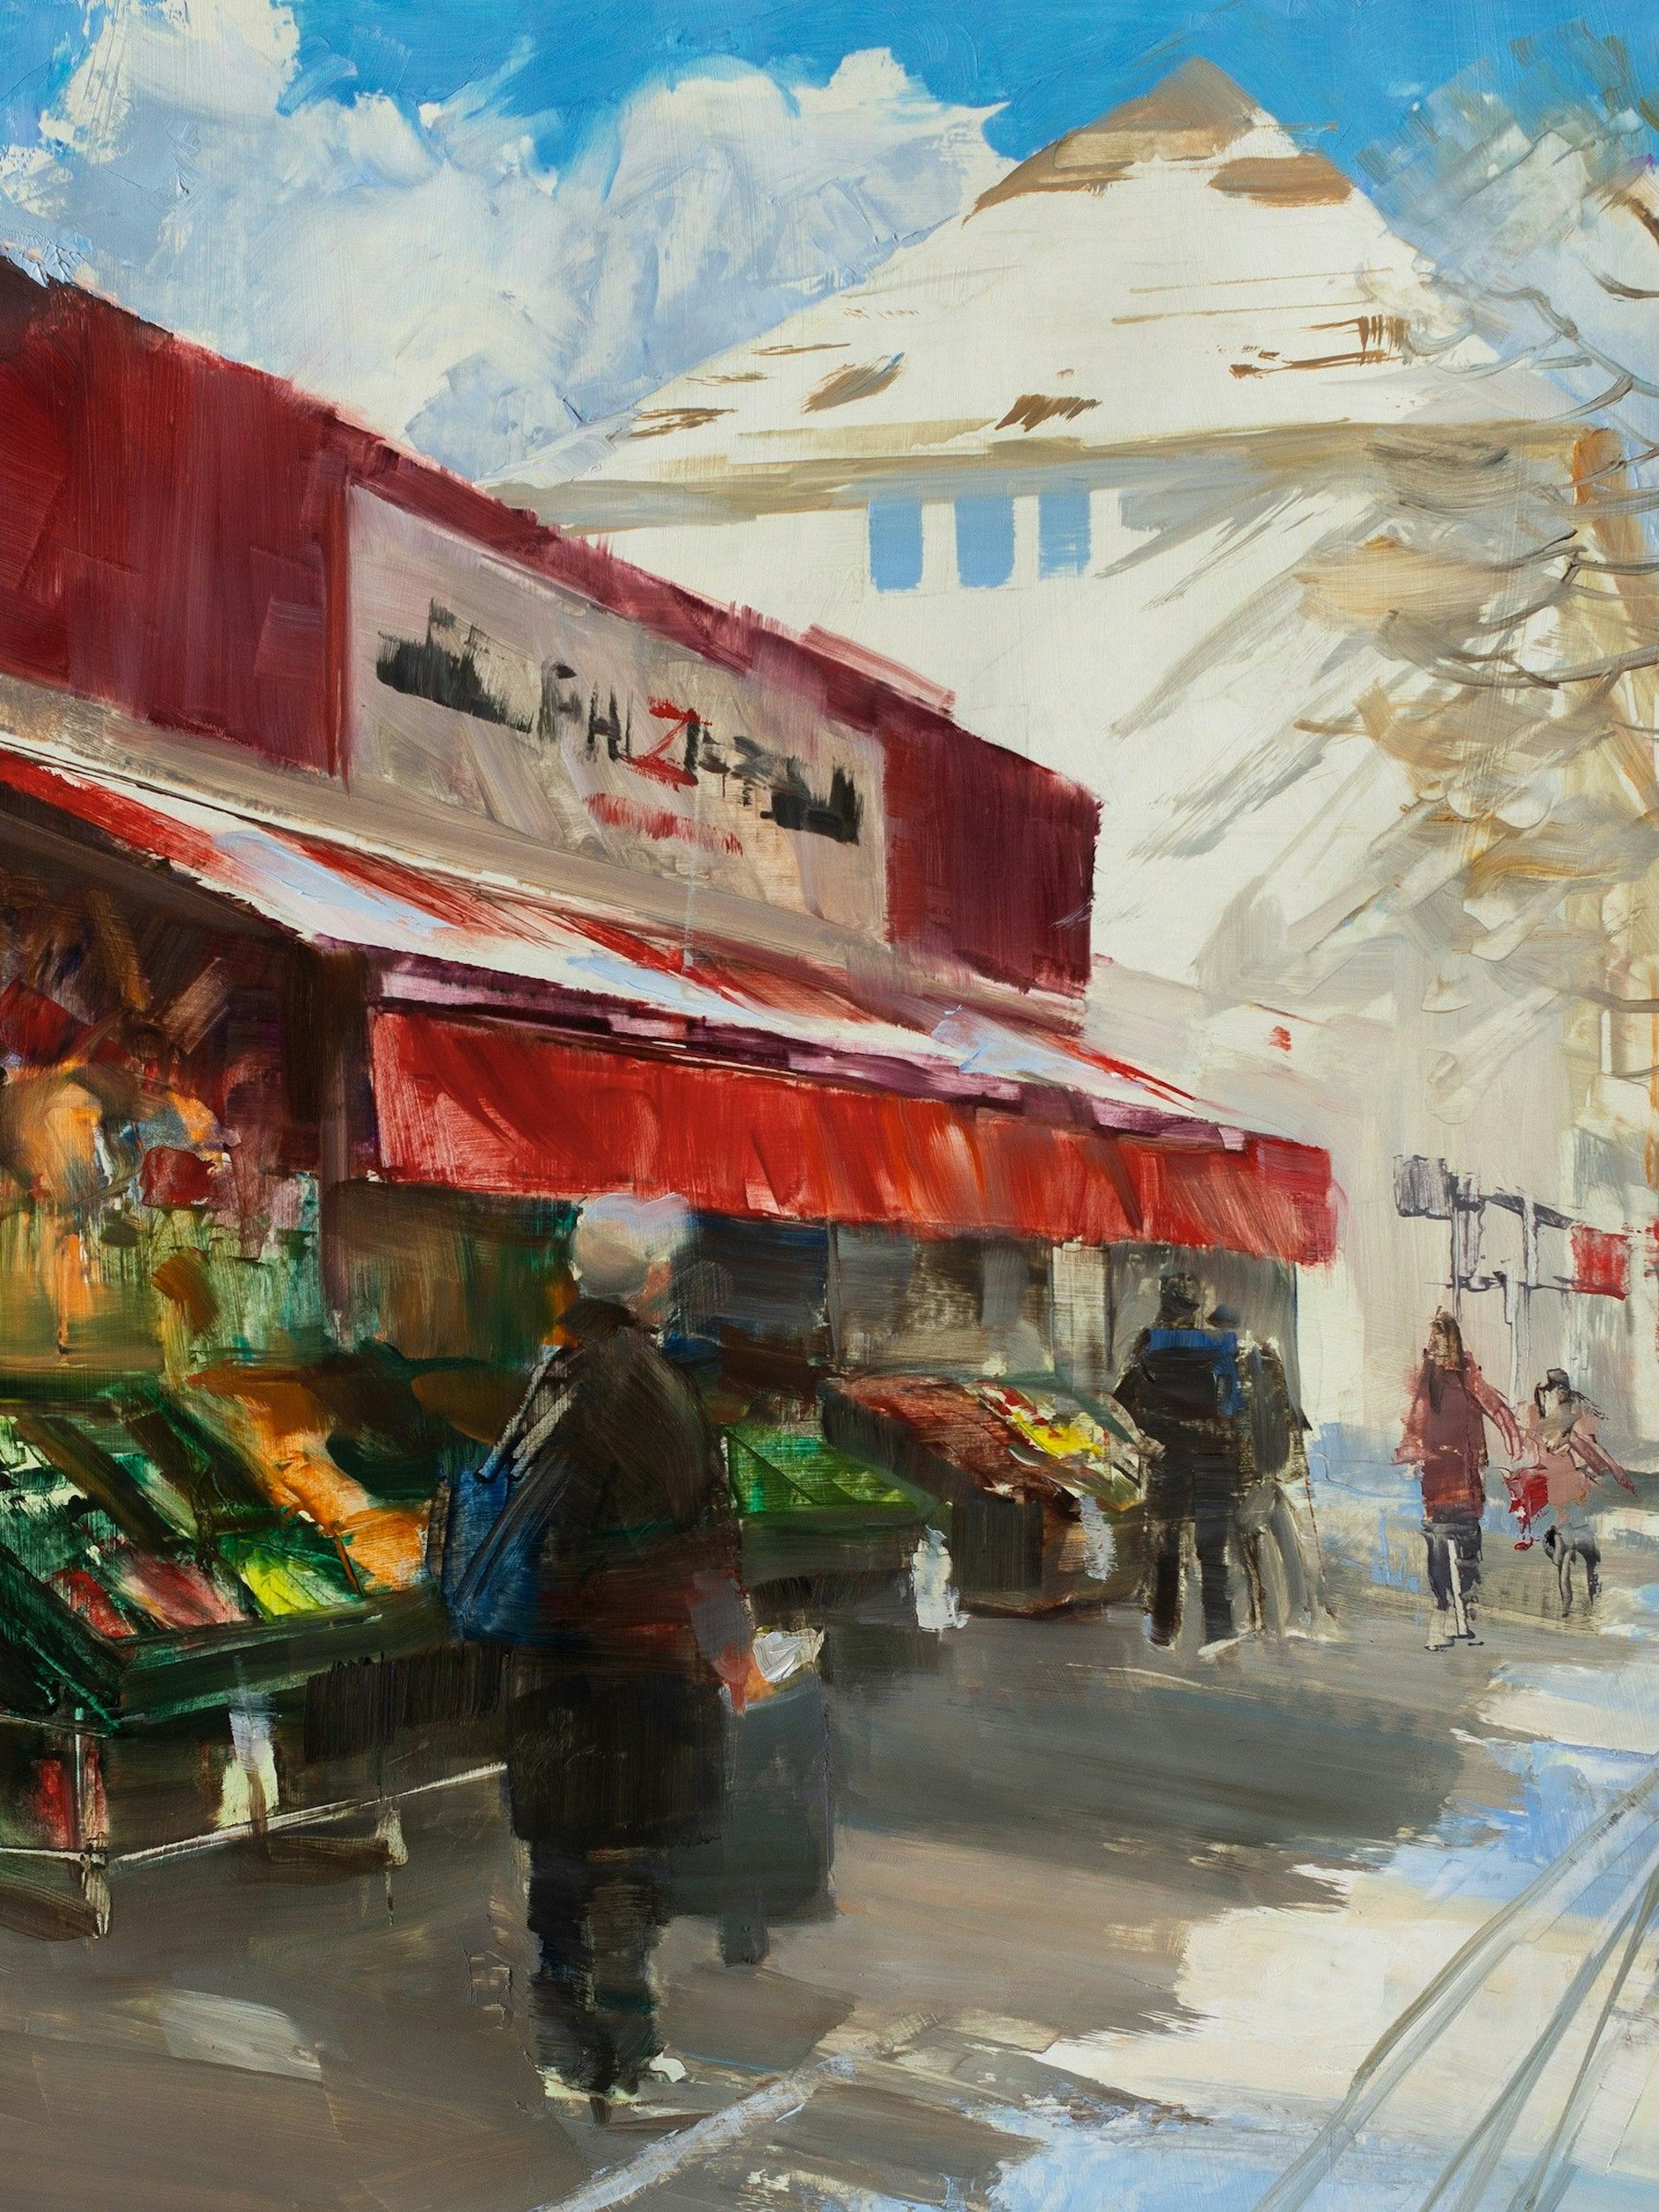 Der Lebensmittelladen „Bazar“ auf dem Höninger Weg in Zollstock, gemalt von Torsten Wolber